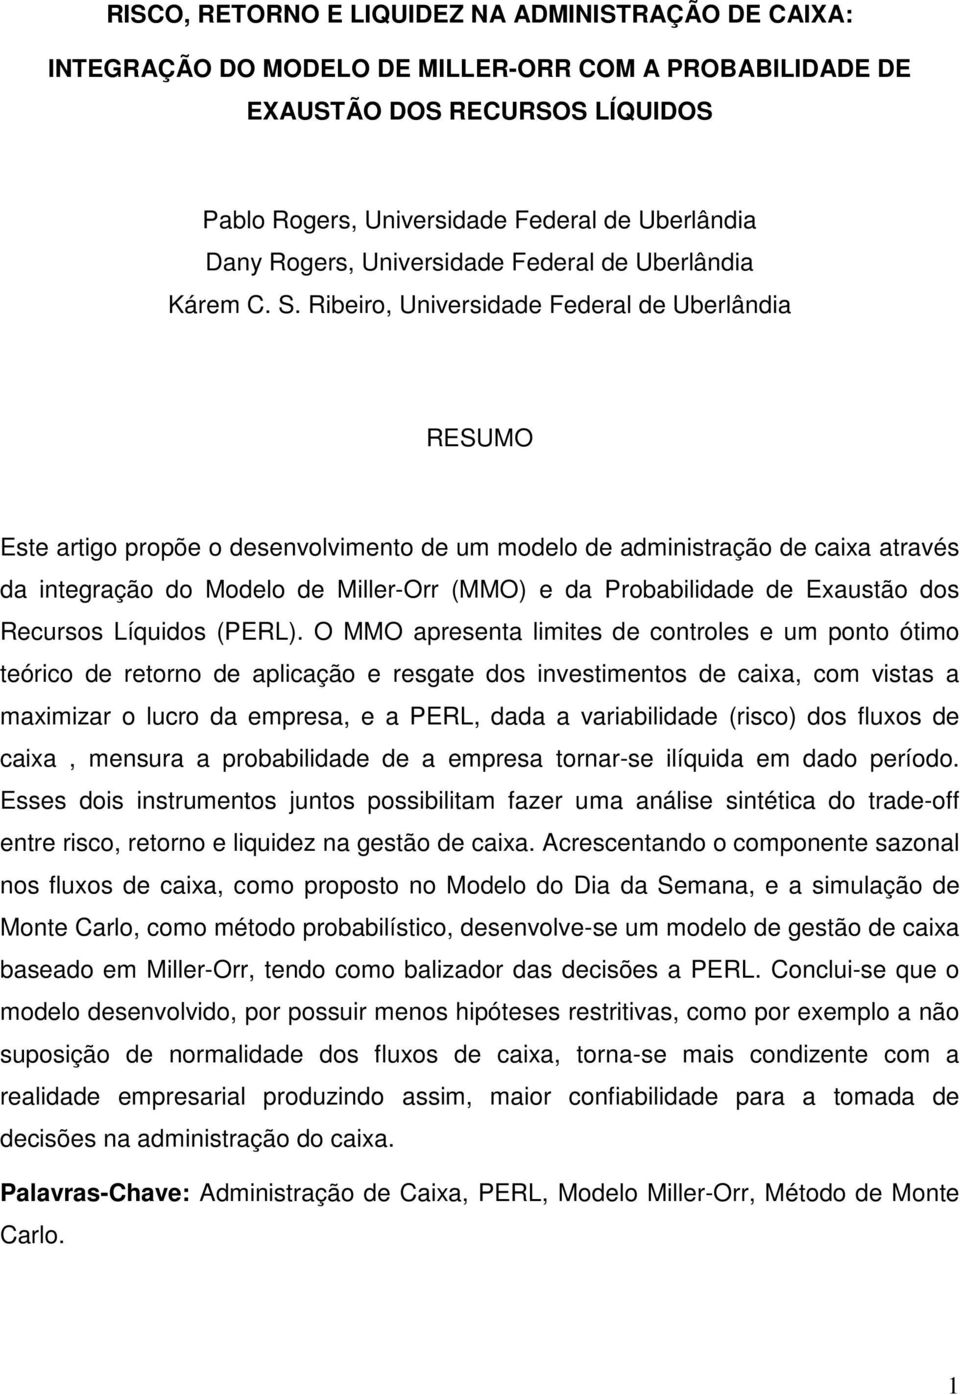 Ribeiro, Universidade Federal de Uberlândia RESUMO Este artigo propõe o desenvolvimento de um modelo de administração de caixa através da integração do Modelo de Miller-Orr (MMO) e da Probabilidade